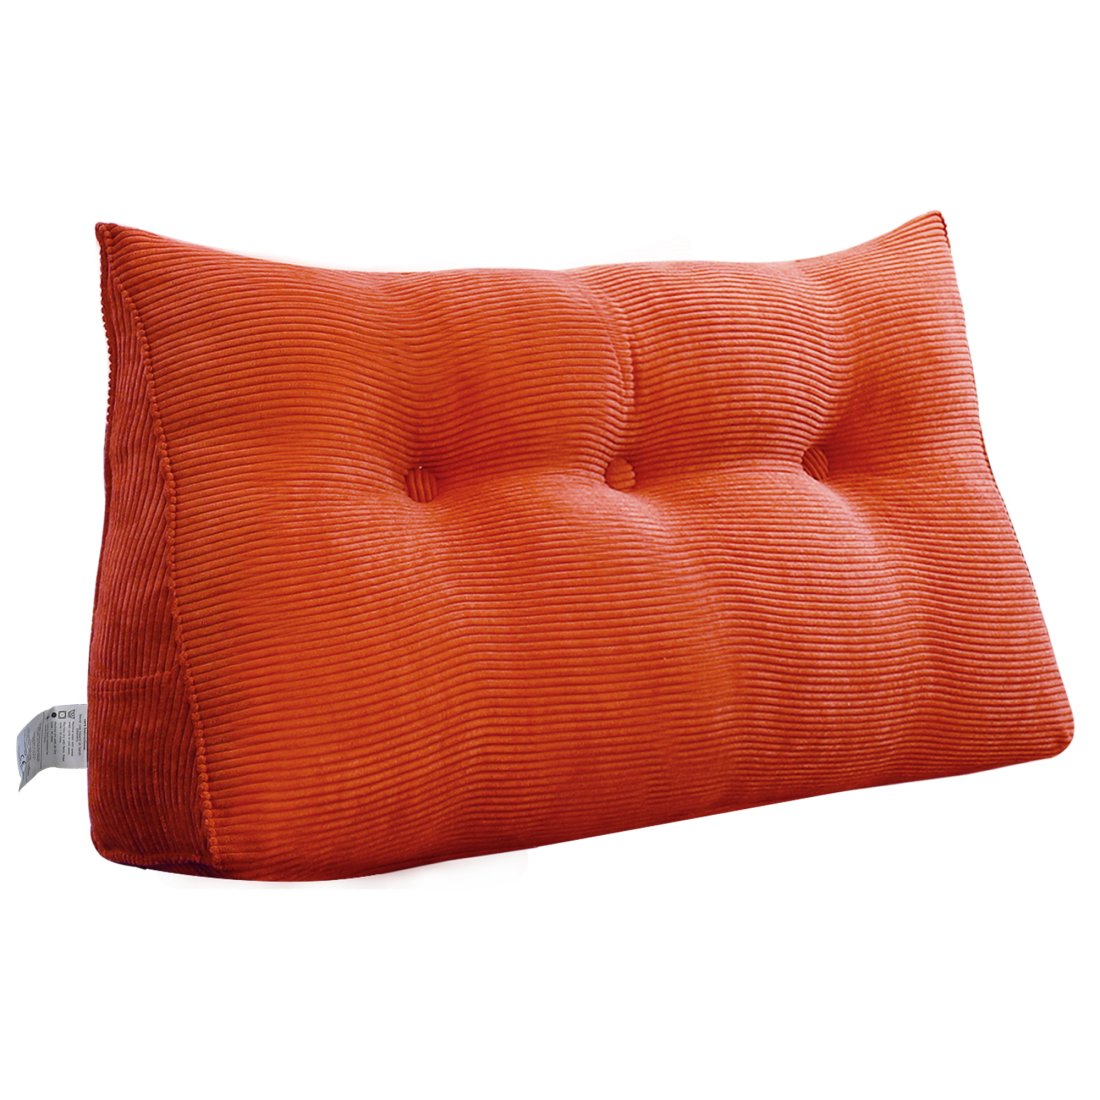 https://www.zencent.com/wp-content/uploads/2020/06/996_wedge-pillow-cushion-17.jpg